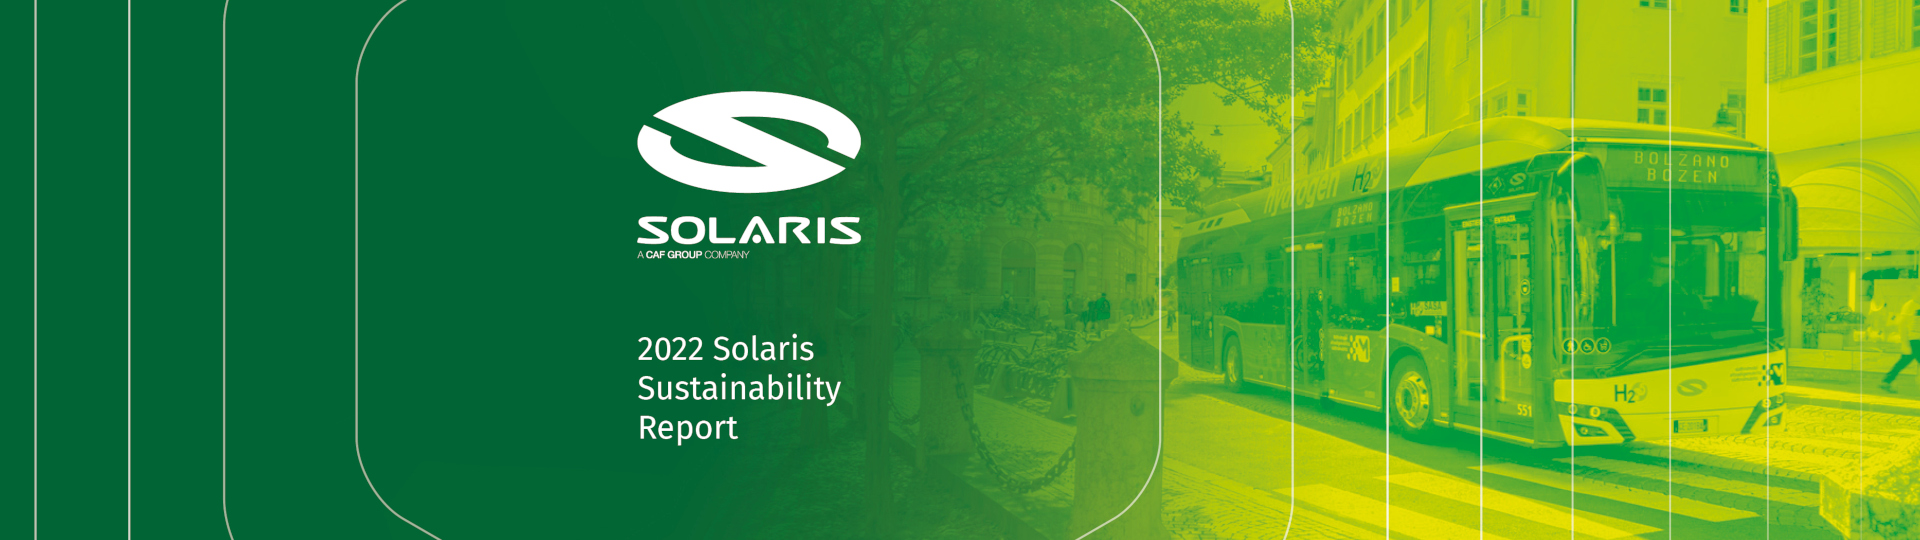 Solaris publikuje Raport zrównoważonego rozwoju za rok 2022